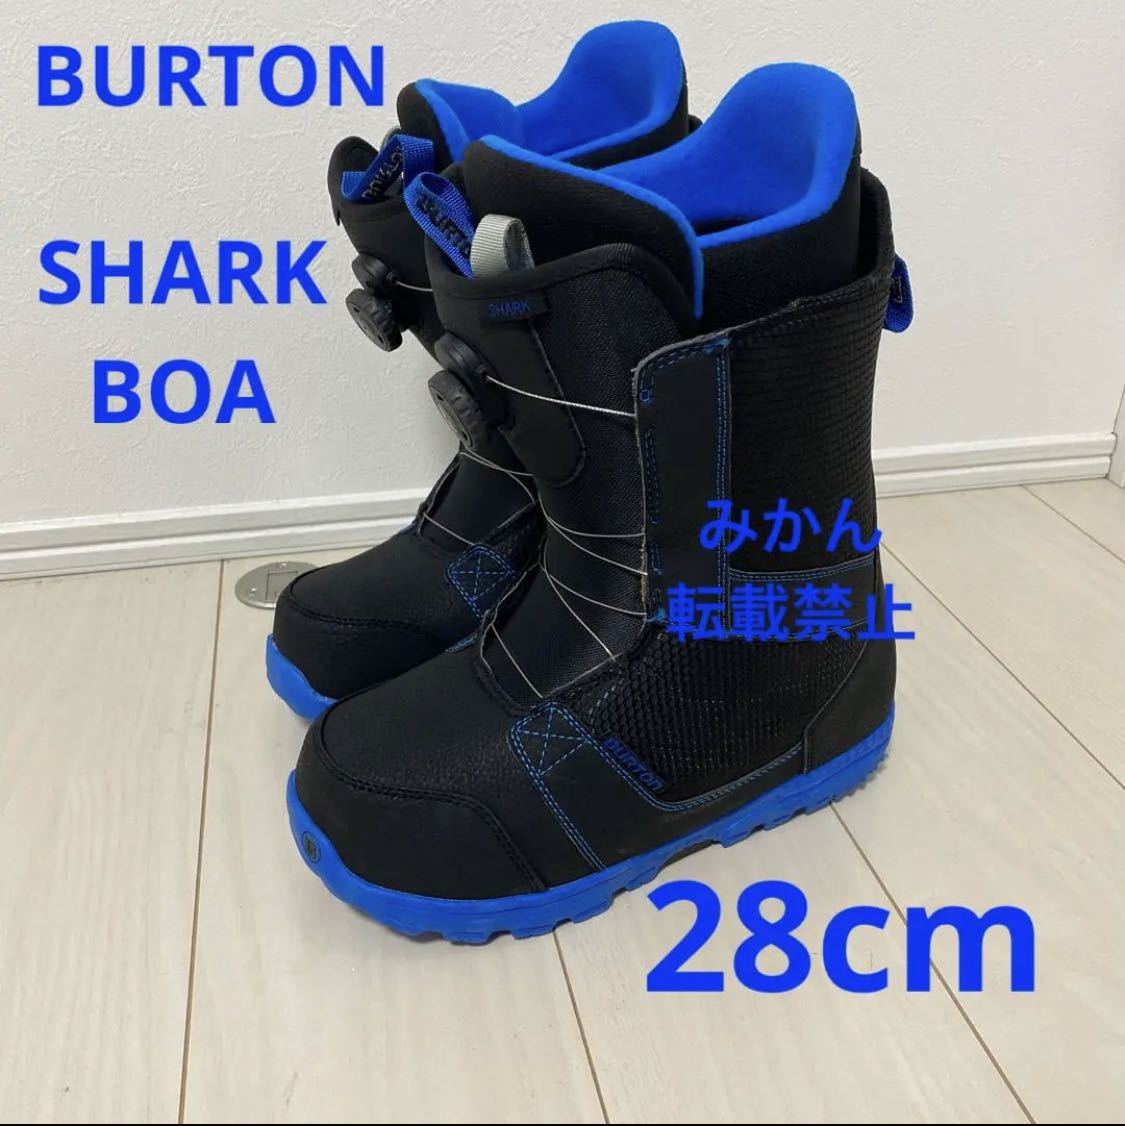 セールネット 【28cm】BURTON SHARK BOA メンズ スノーボードブーツ